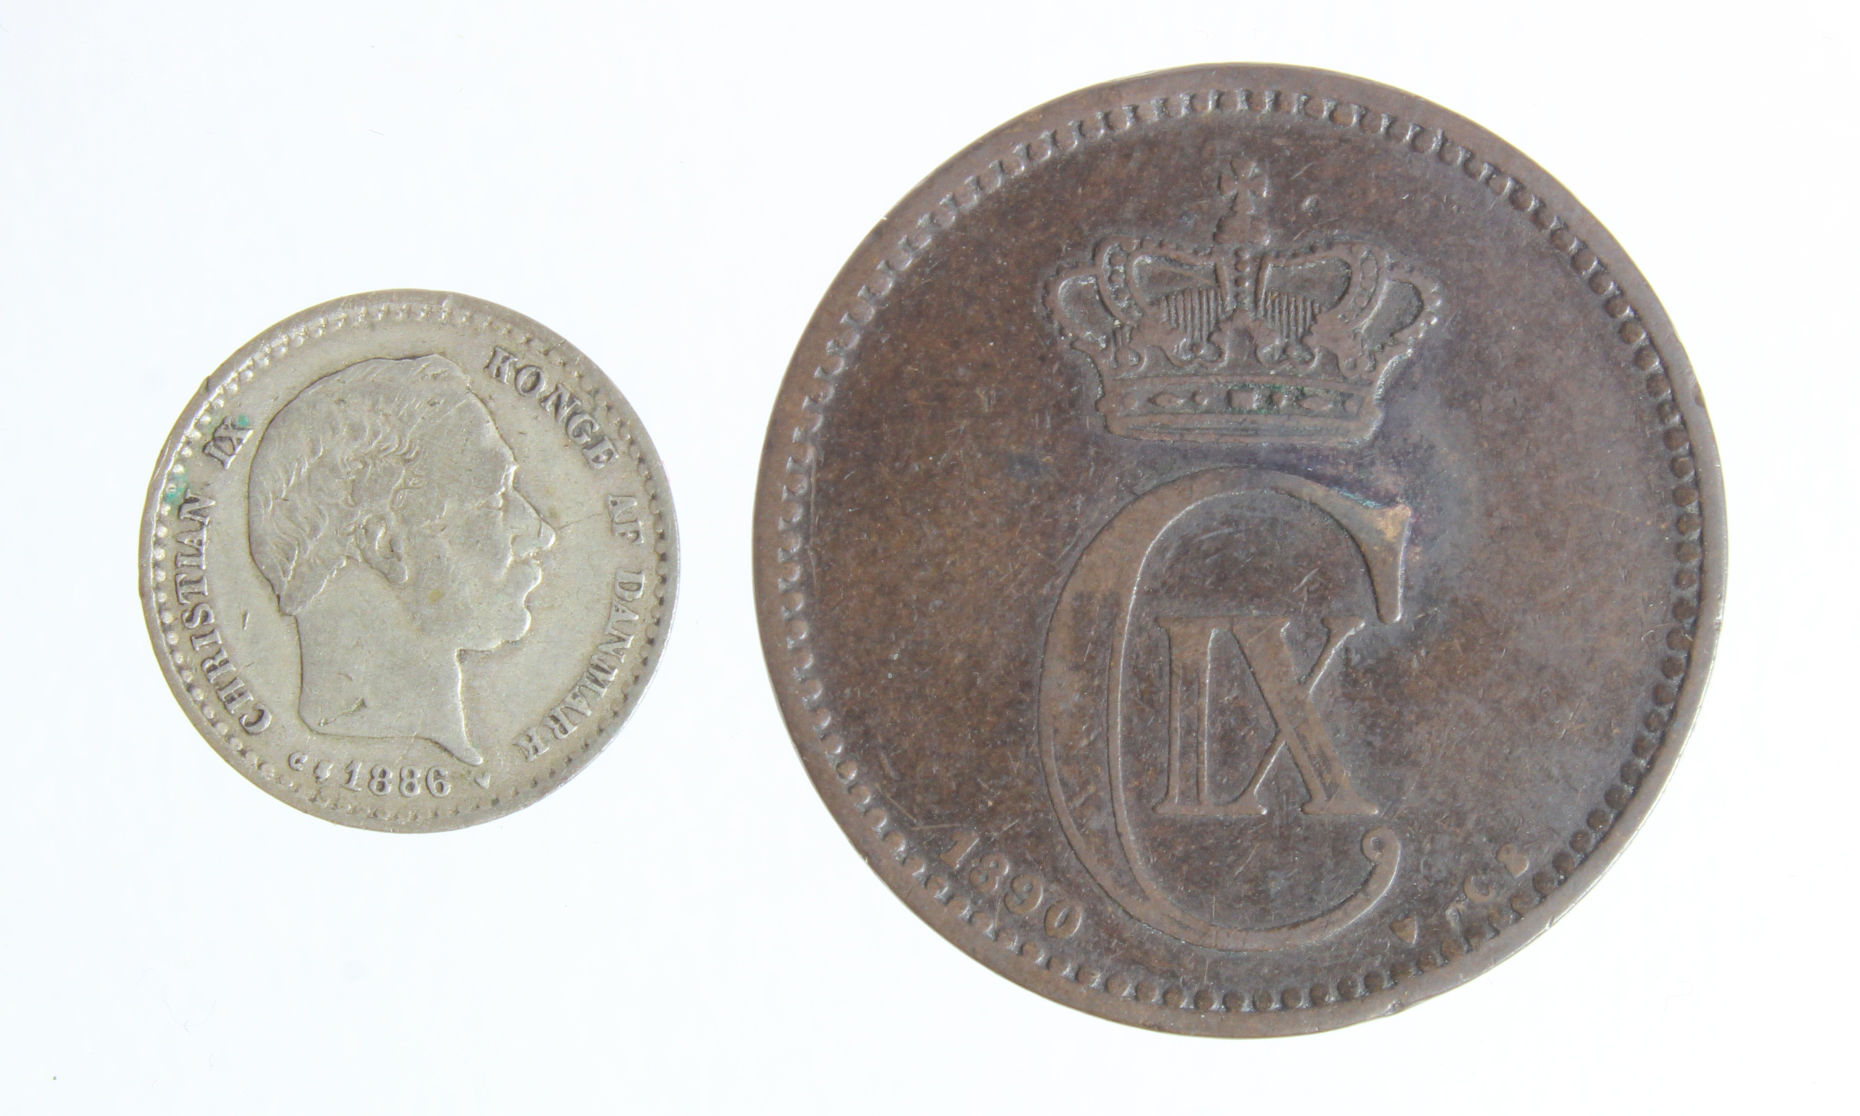 Denmark (2): Denmark 10 Ore 1886, scarce date, F/GF, and 5 Ore 1890, rare date, nF, tone spot, small